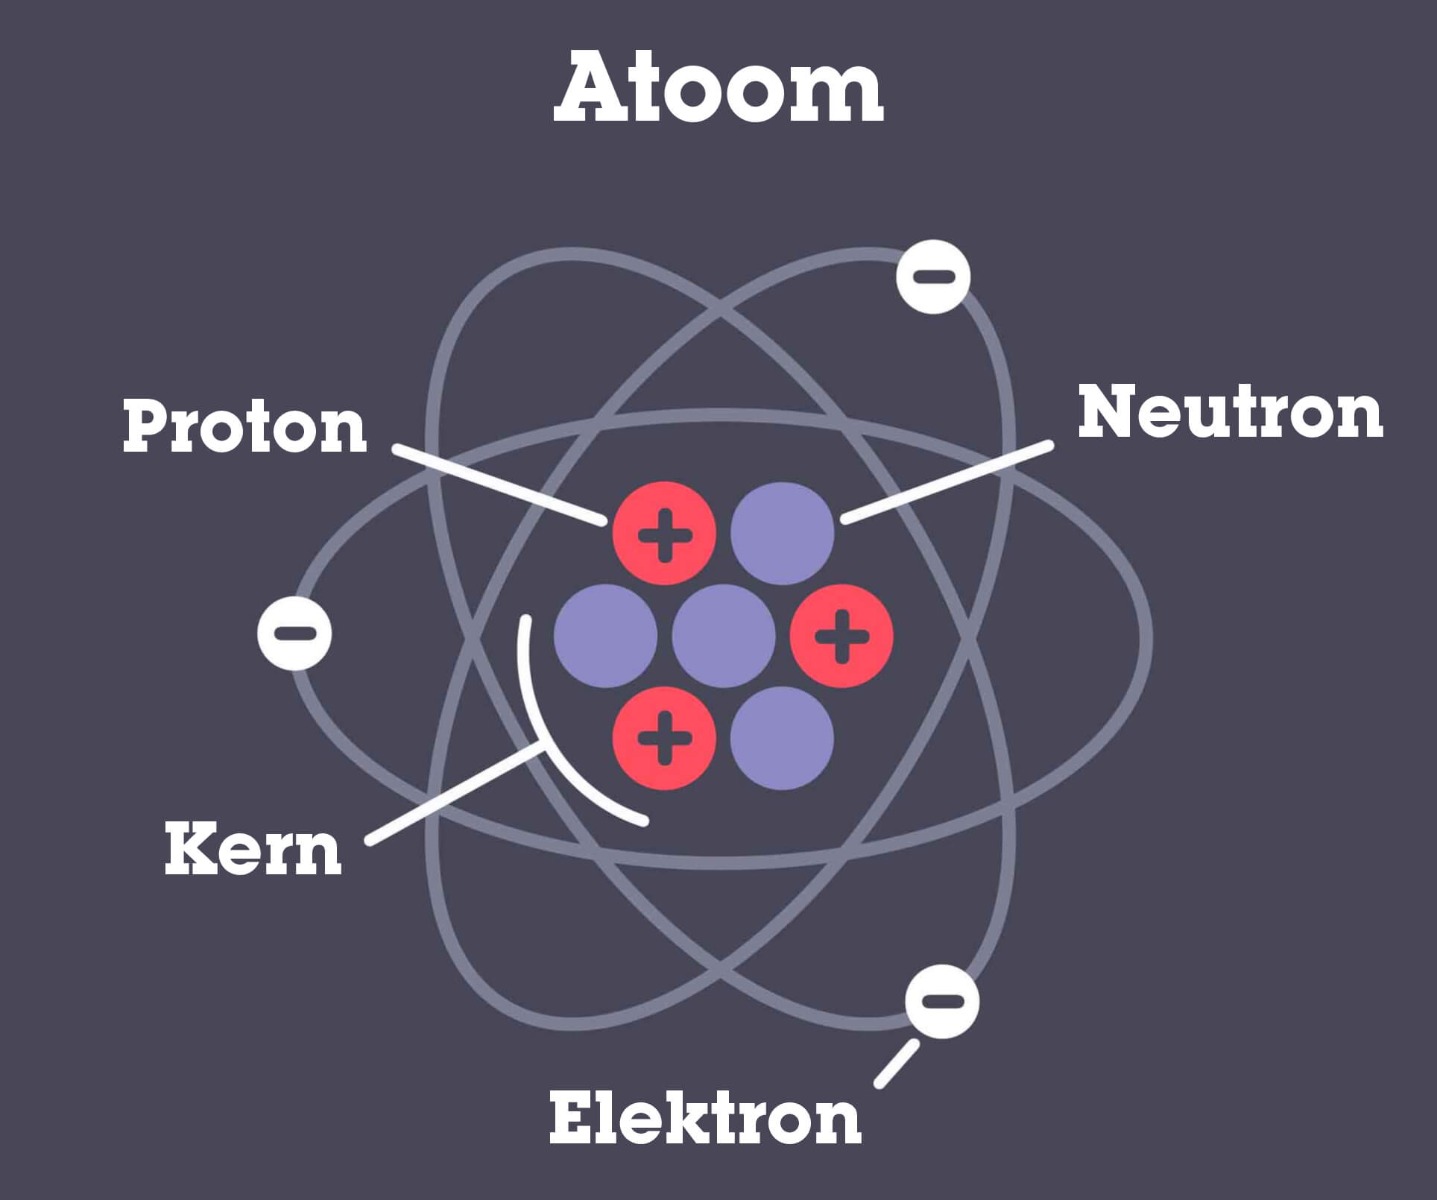 De opbouw van een atoom